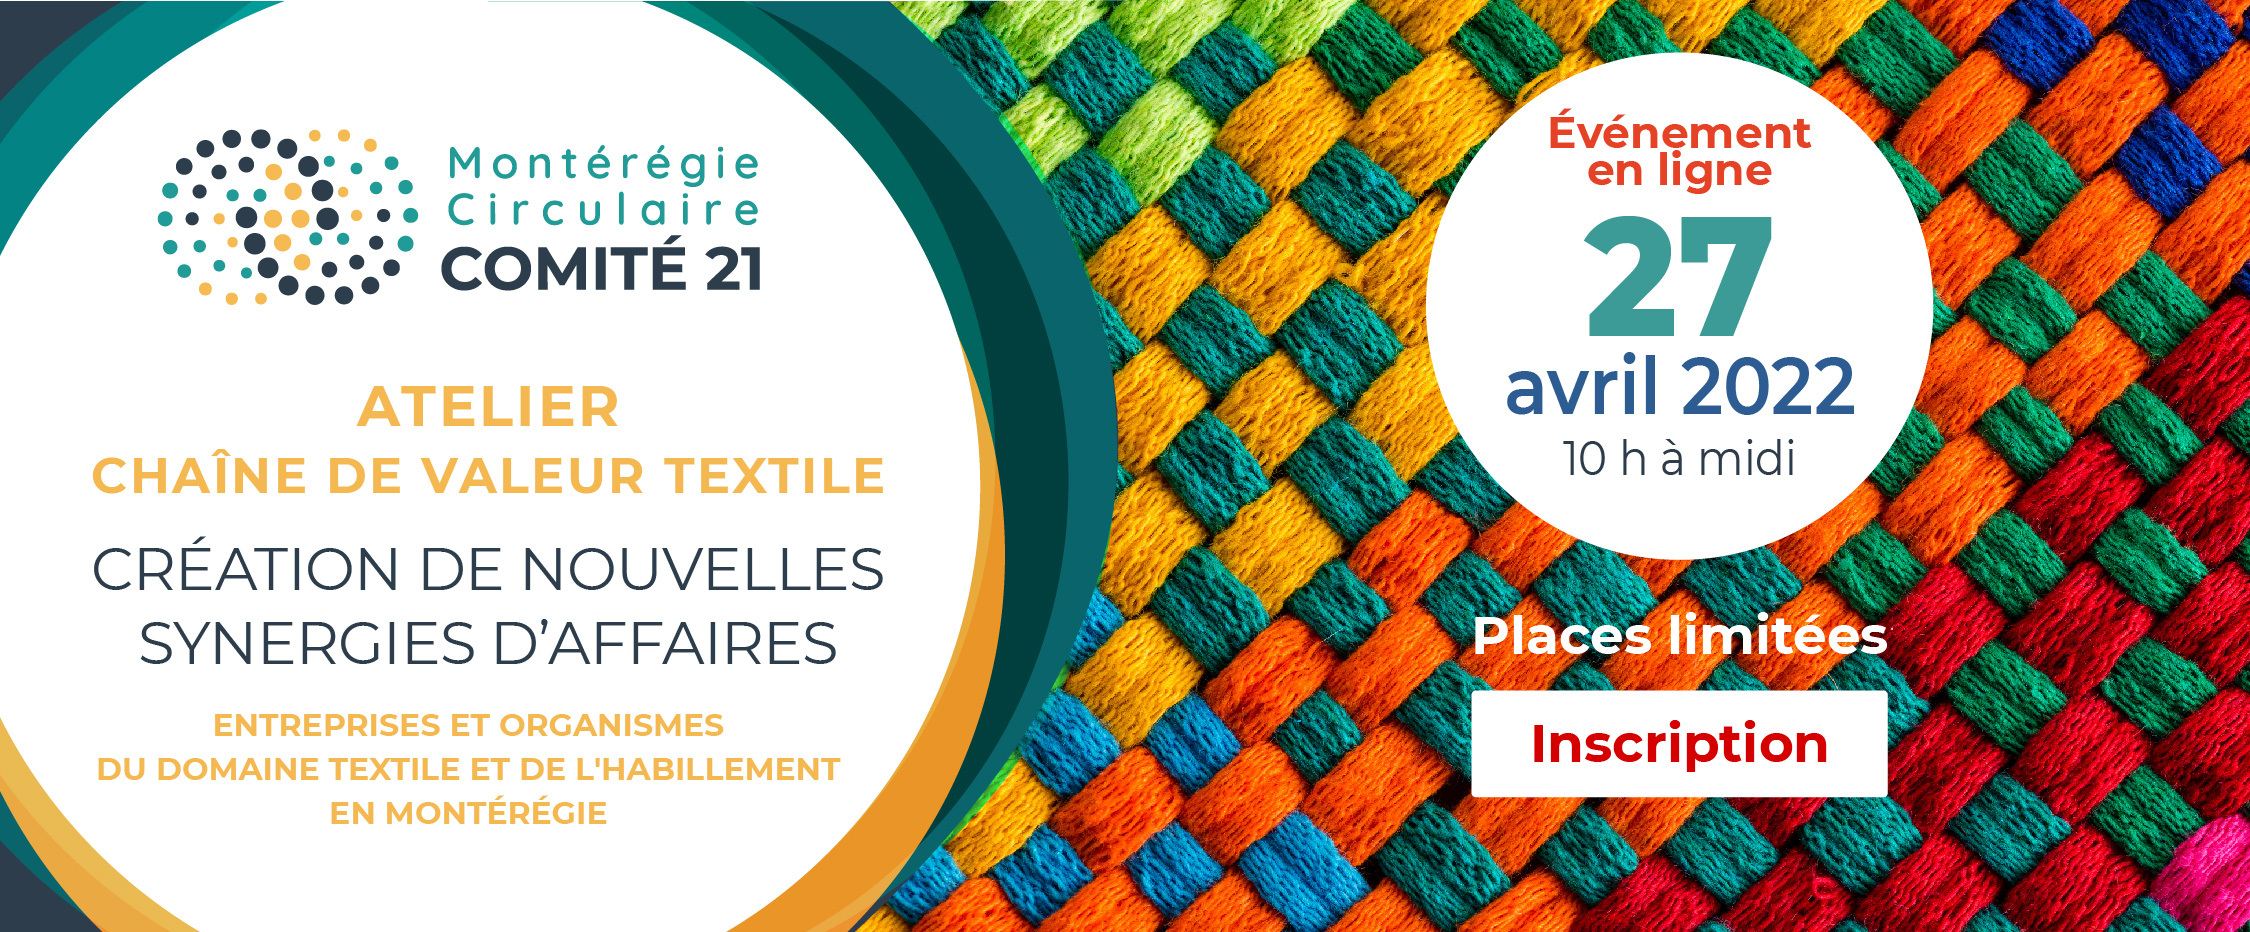 Atelier Chaîne de valeur textile 27 avril | Montérégie Circulaire